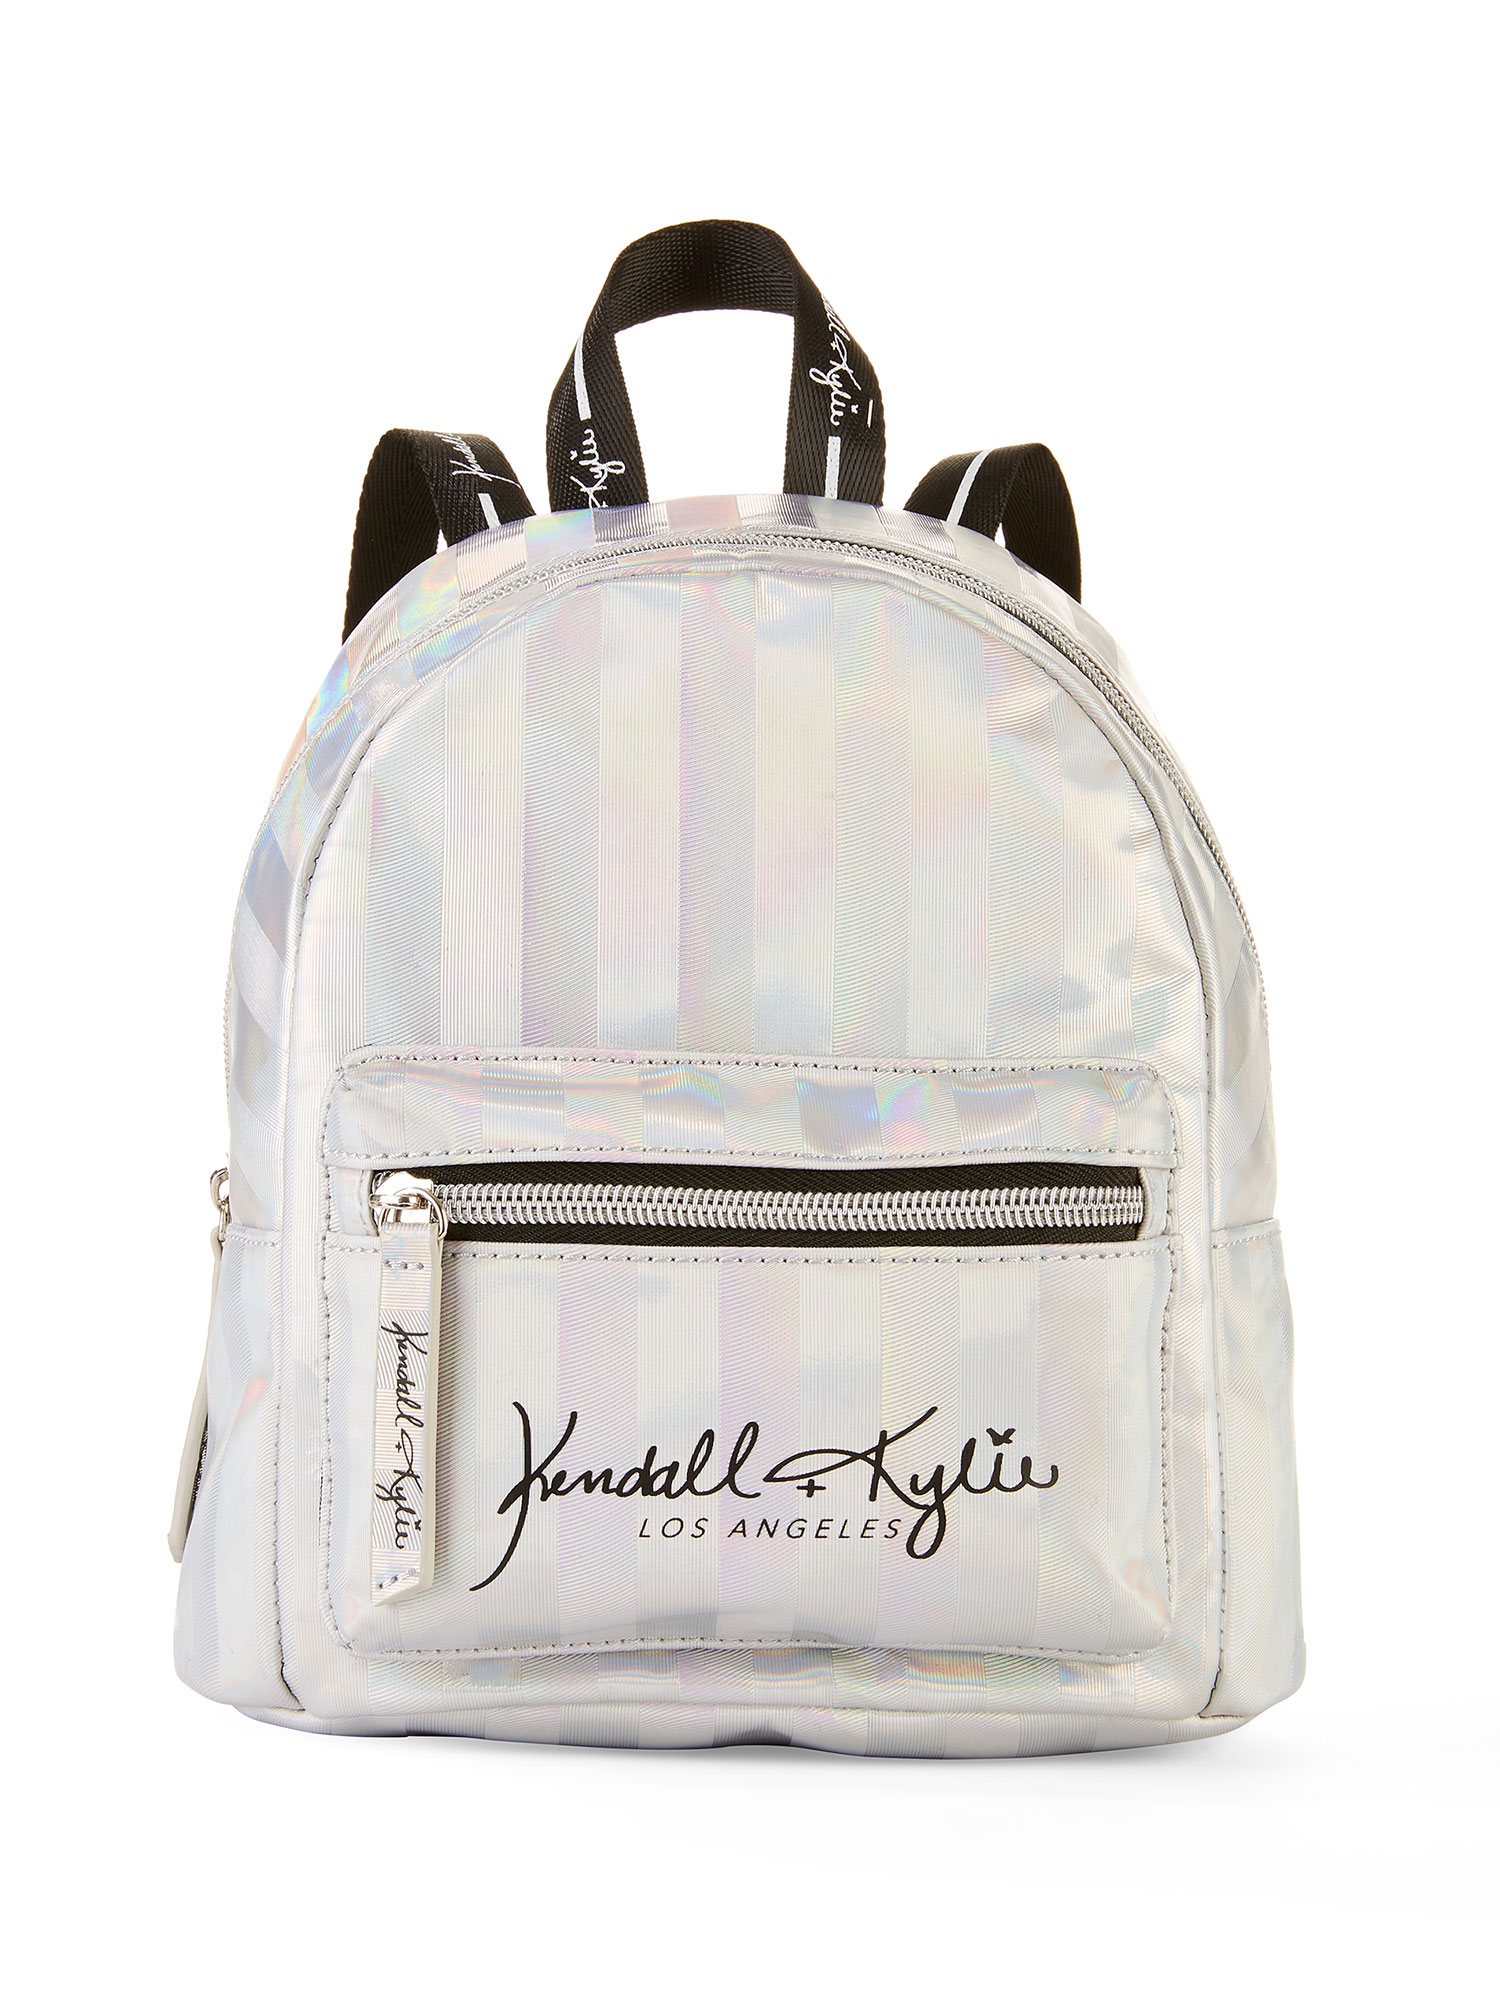 Kendall & Kylie Jenner Are Bringing Back The Massive Handbag